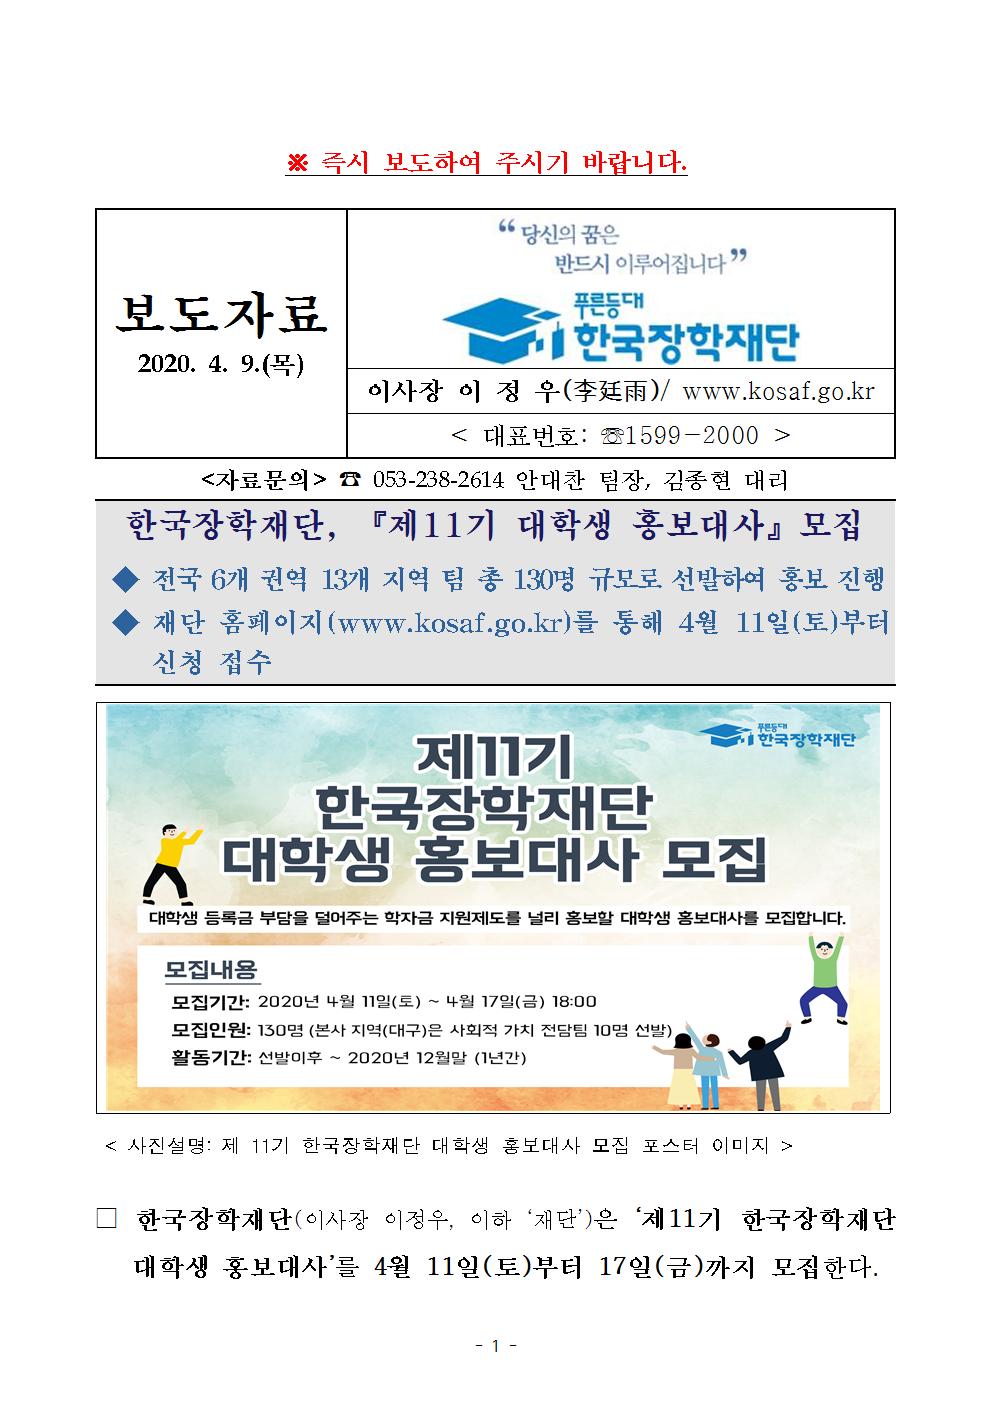 04-13(월)[보도자료] 제11기 한국장학재단 대학생 홍보대사 모집001.jpg